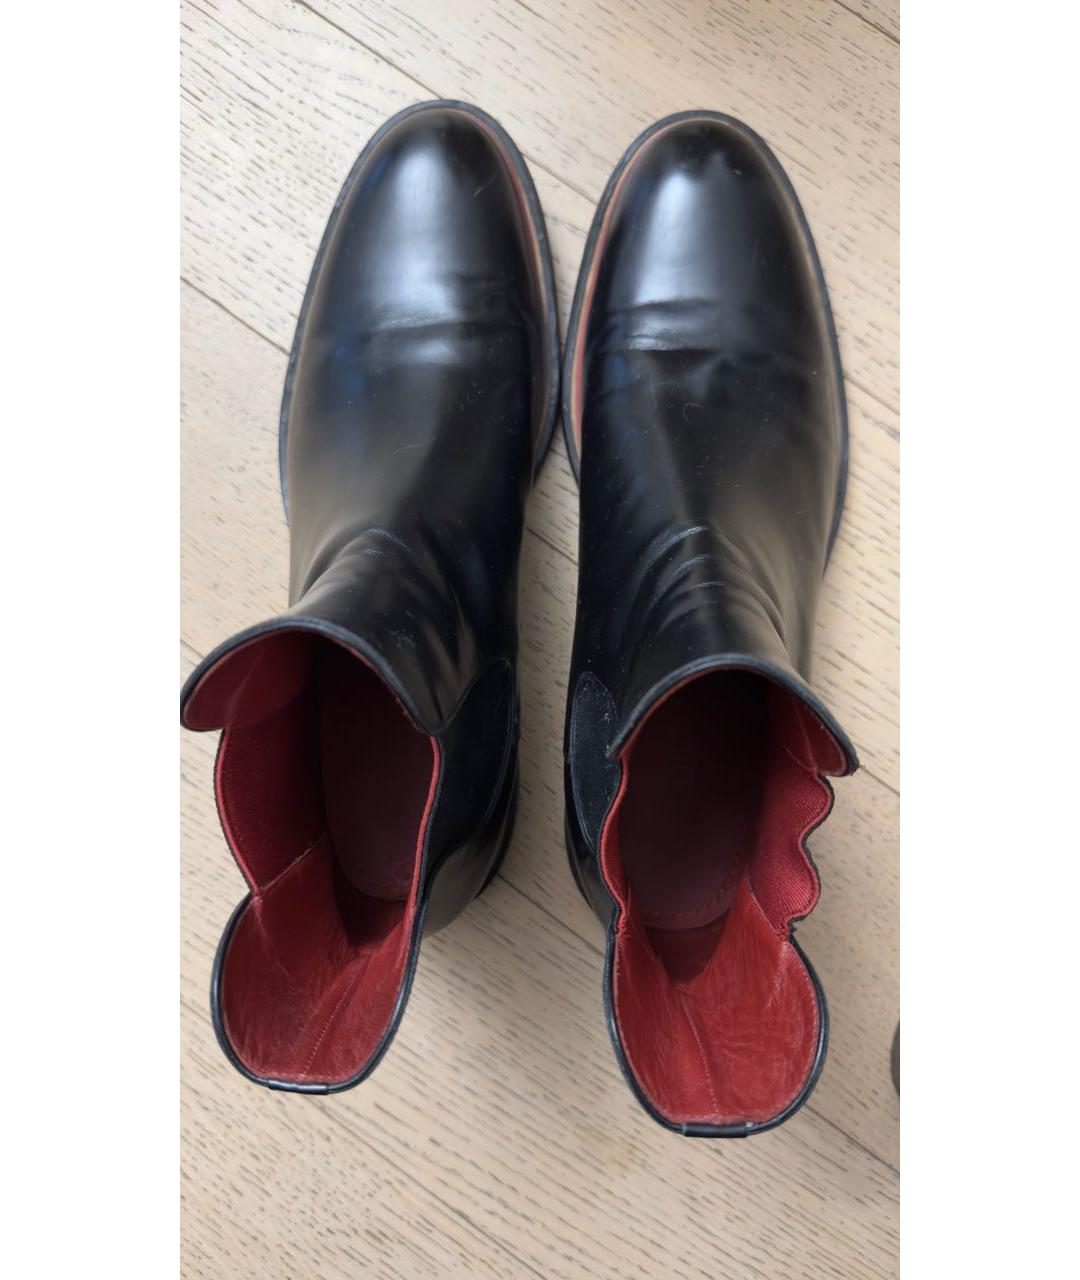 LOUIS VUITTON PRE-OWNED Черные кожаные высокие ботинки, фото 3